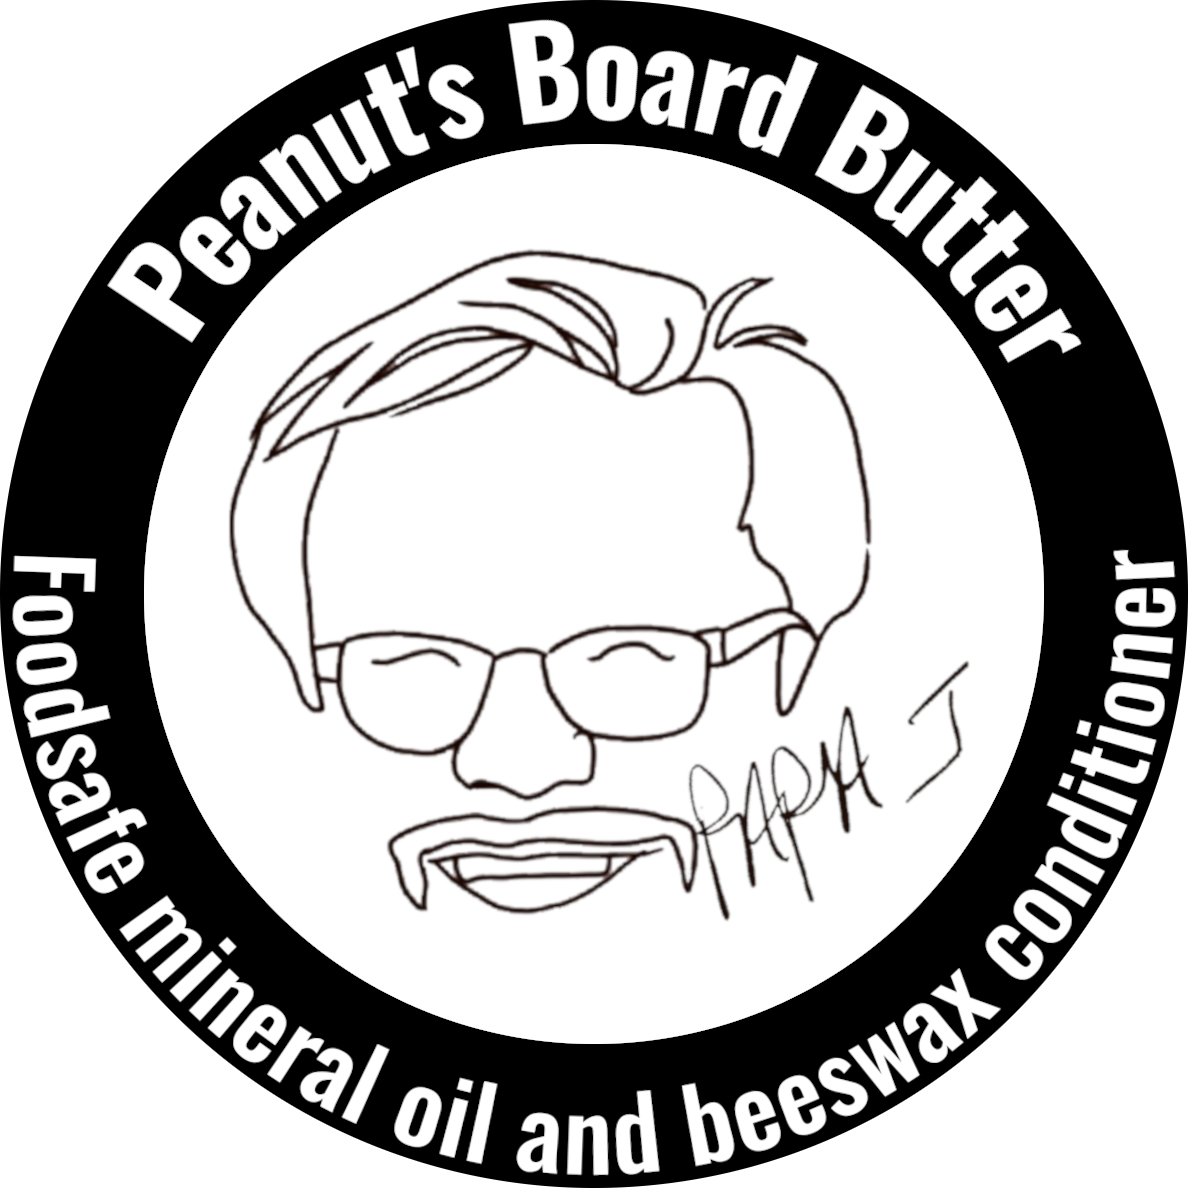 Peanut's Board Butter